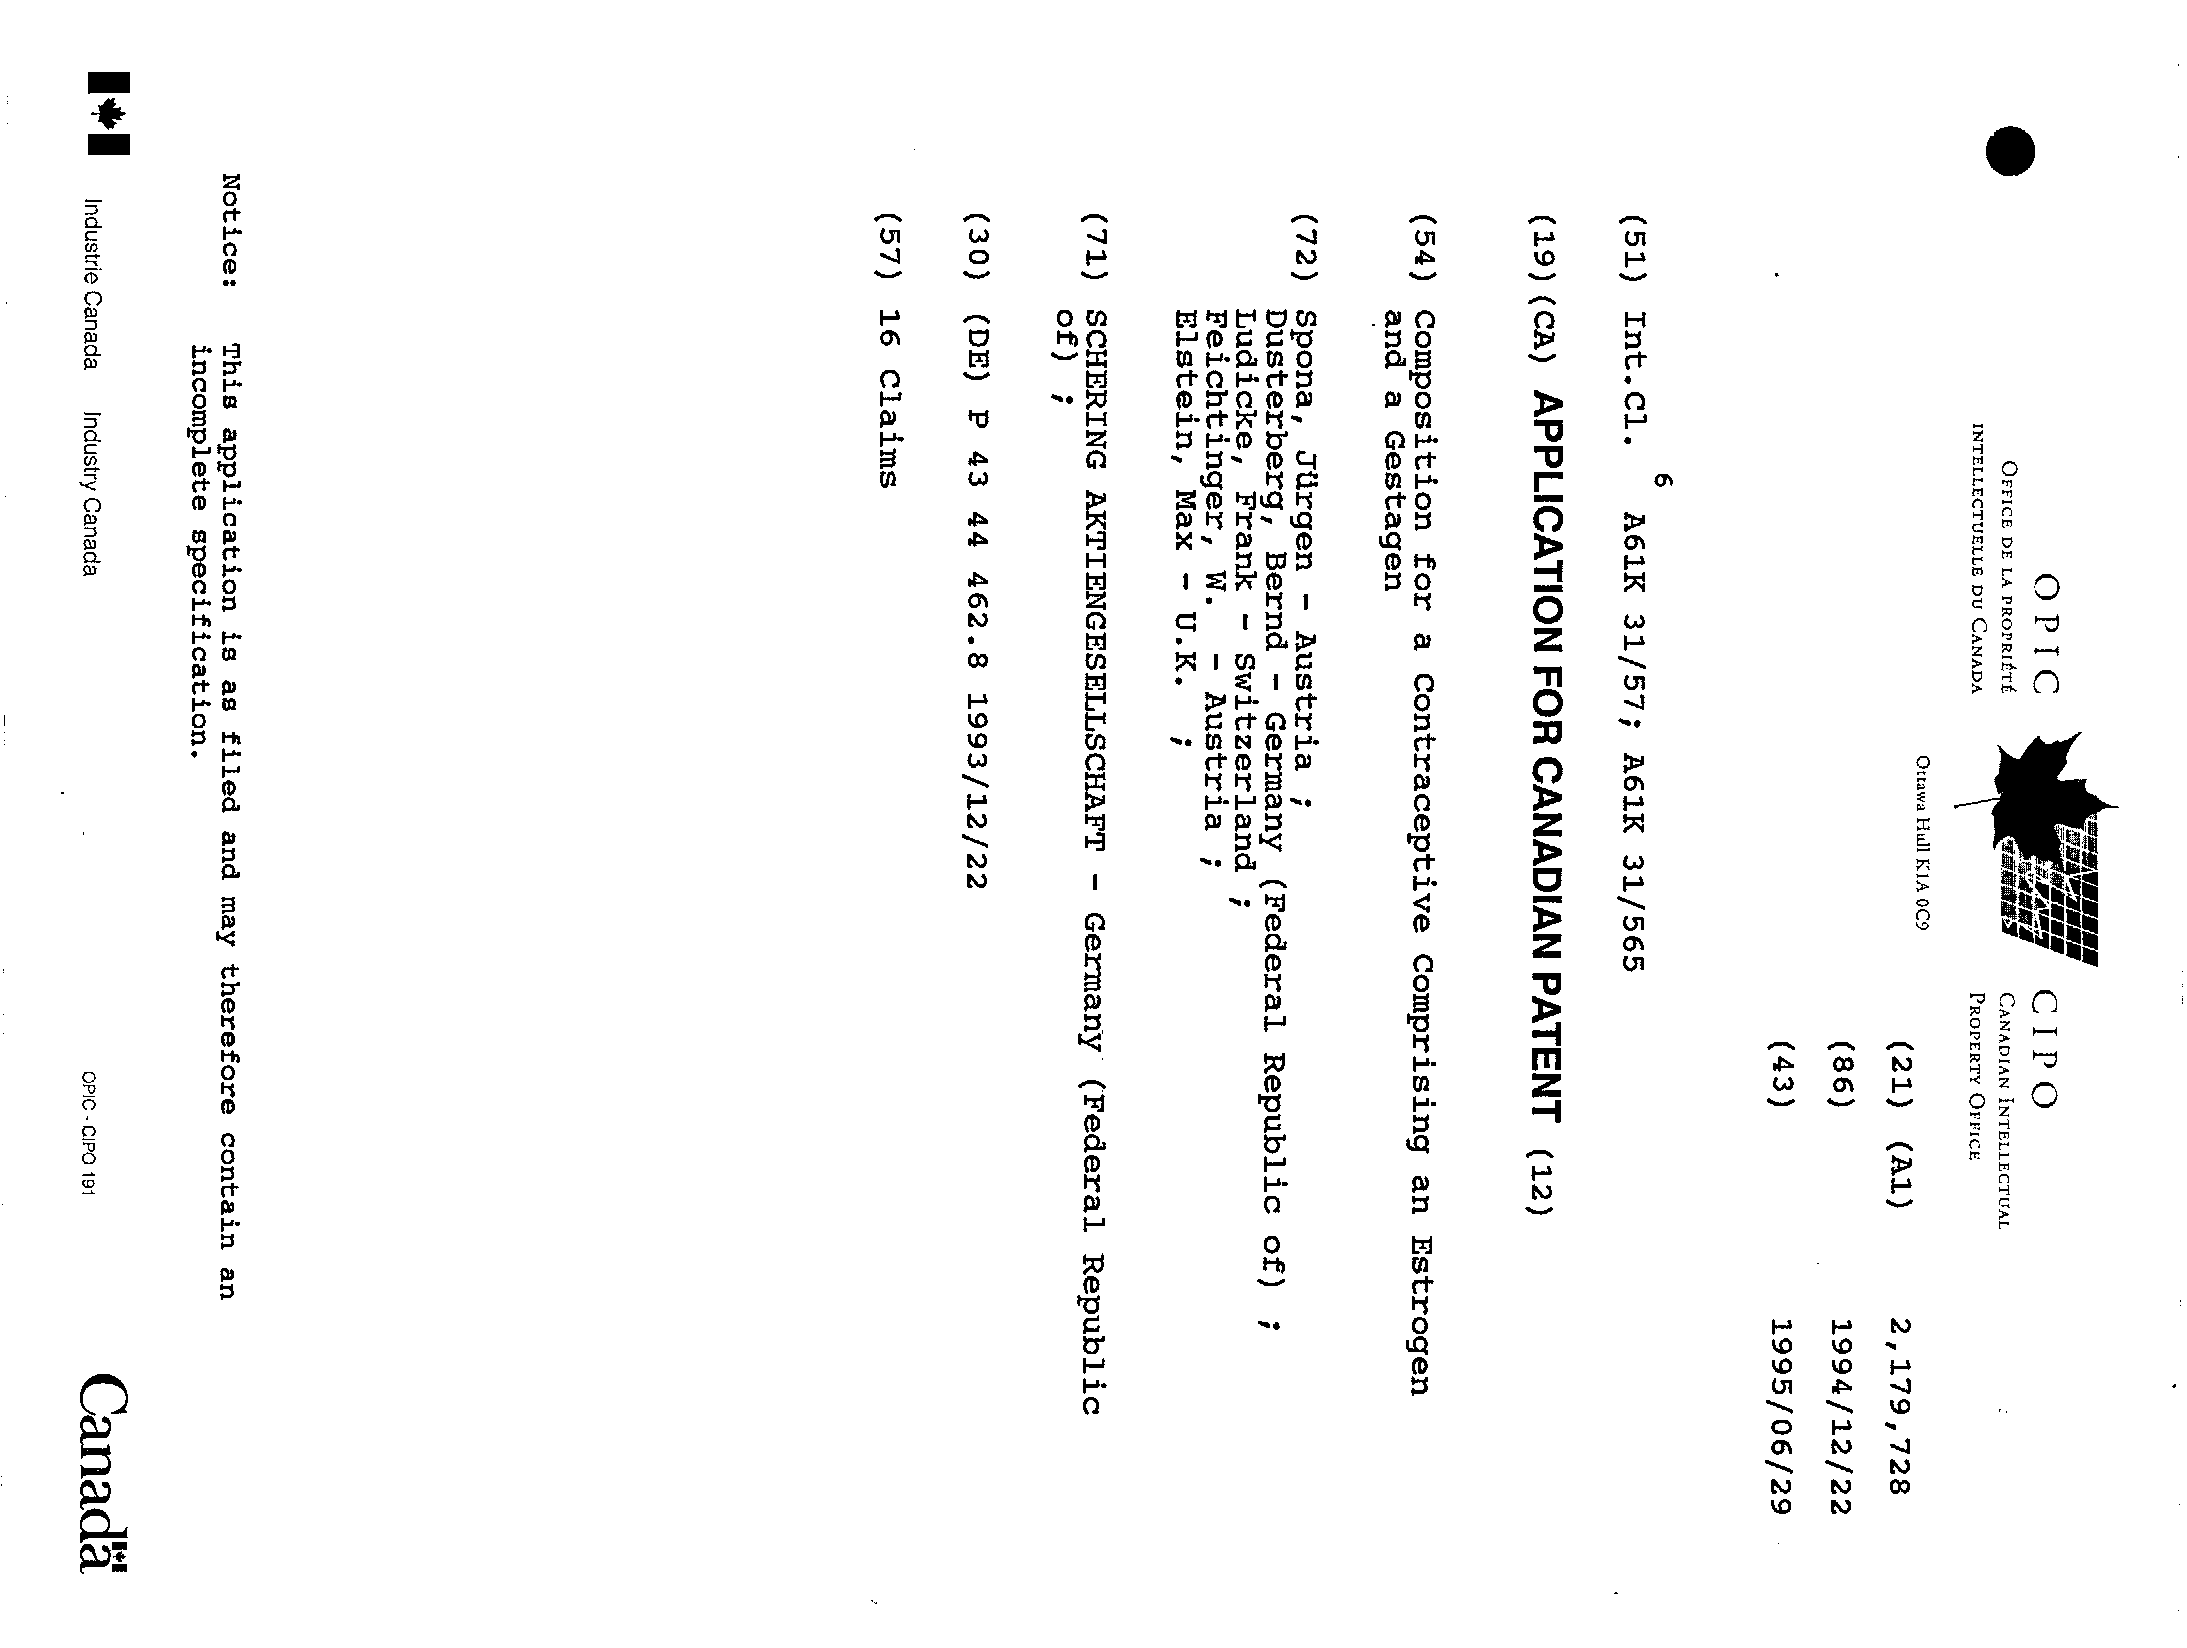 Document de brevet canadien 2179728. Page couverture 19951230. Image 1 de 1